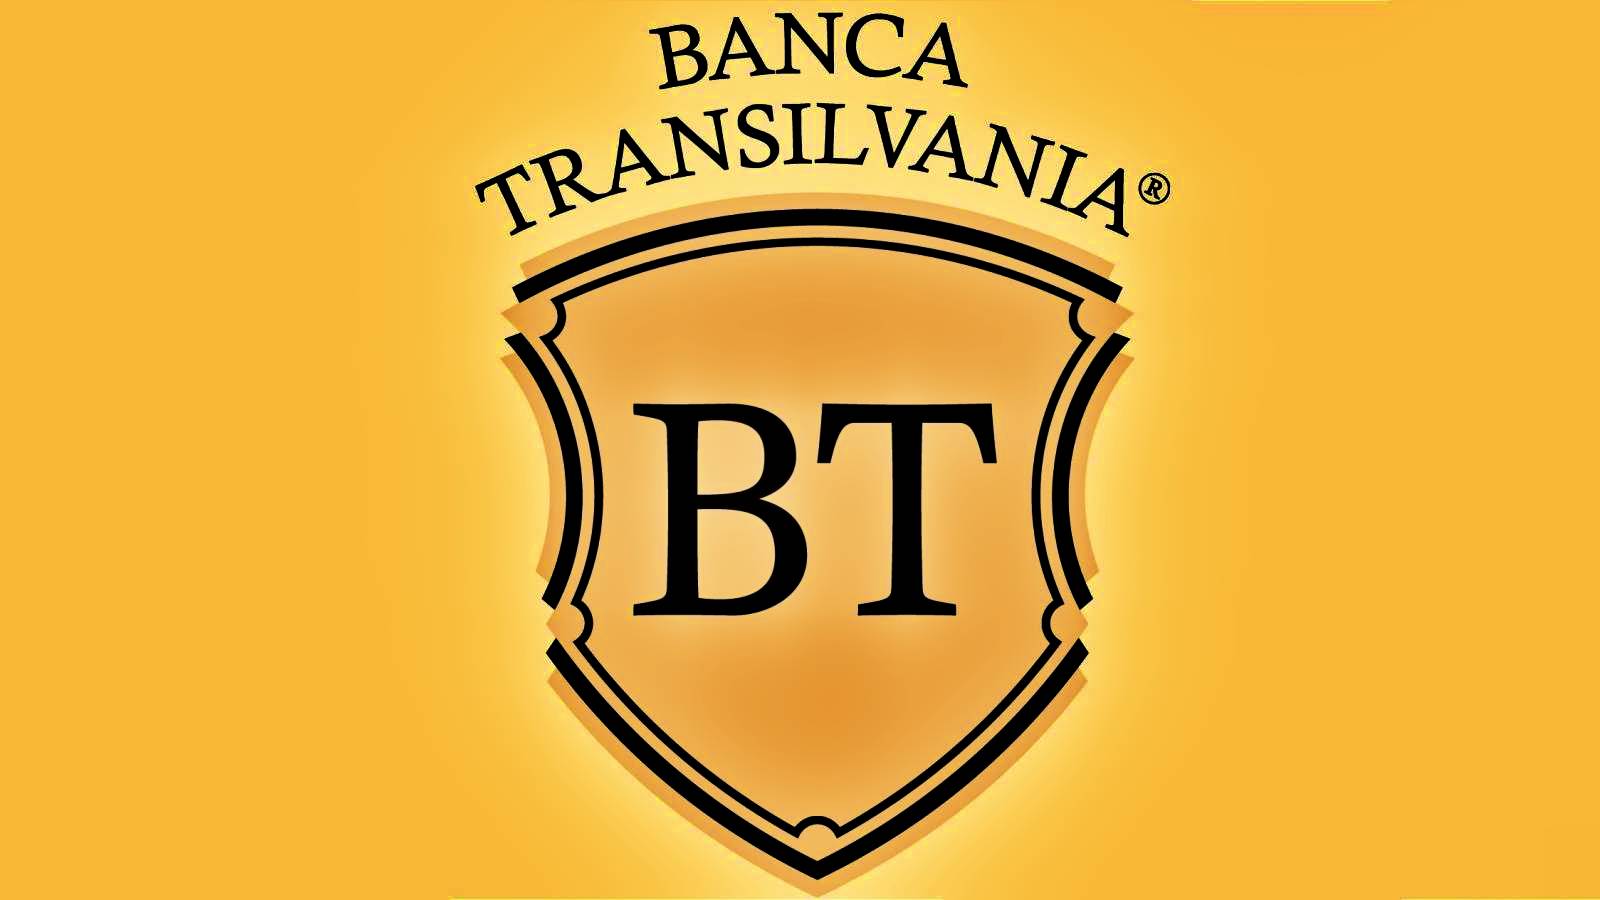 BANCA Transilvania Det OFFICIELLA meddelandet riktar sig till kunder som de inte kände